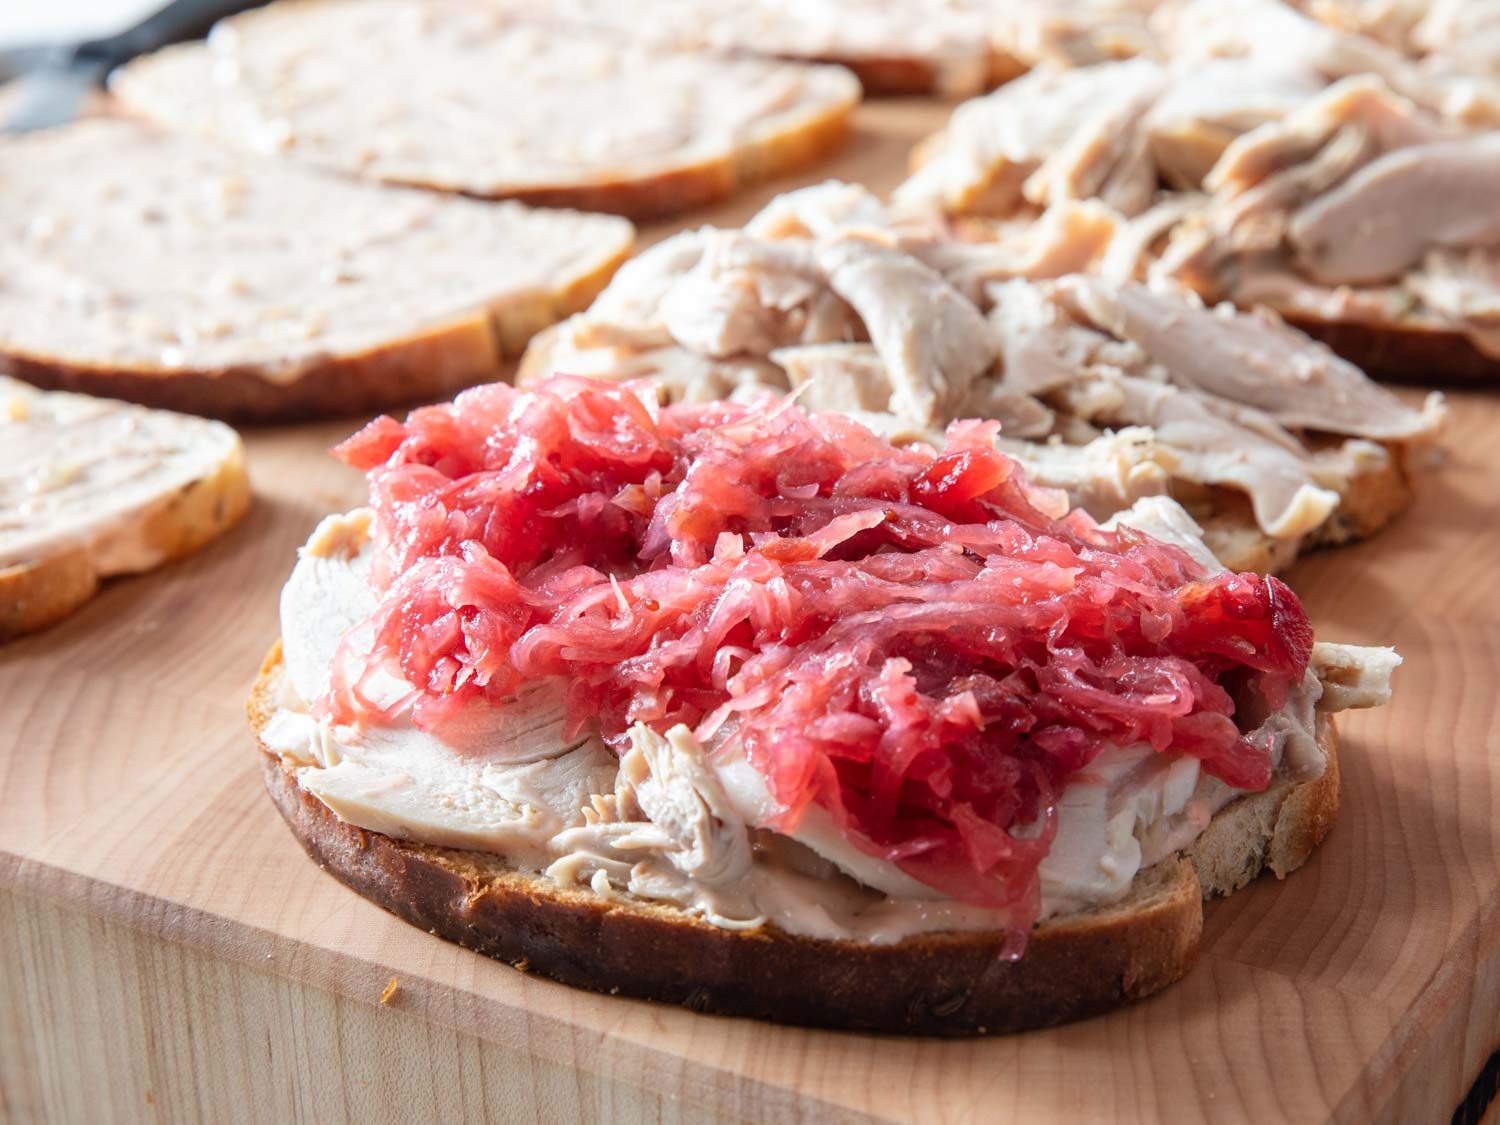 Closeup of cranberry-sauerkraut on top of turkey for a Reuben sandwich.